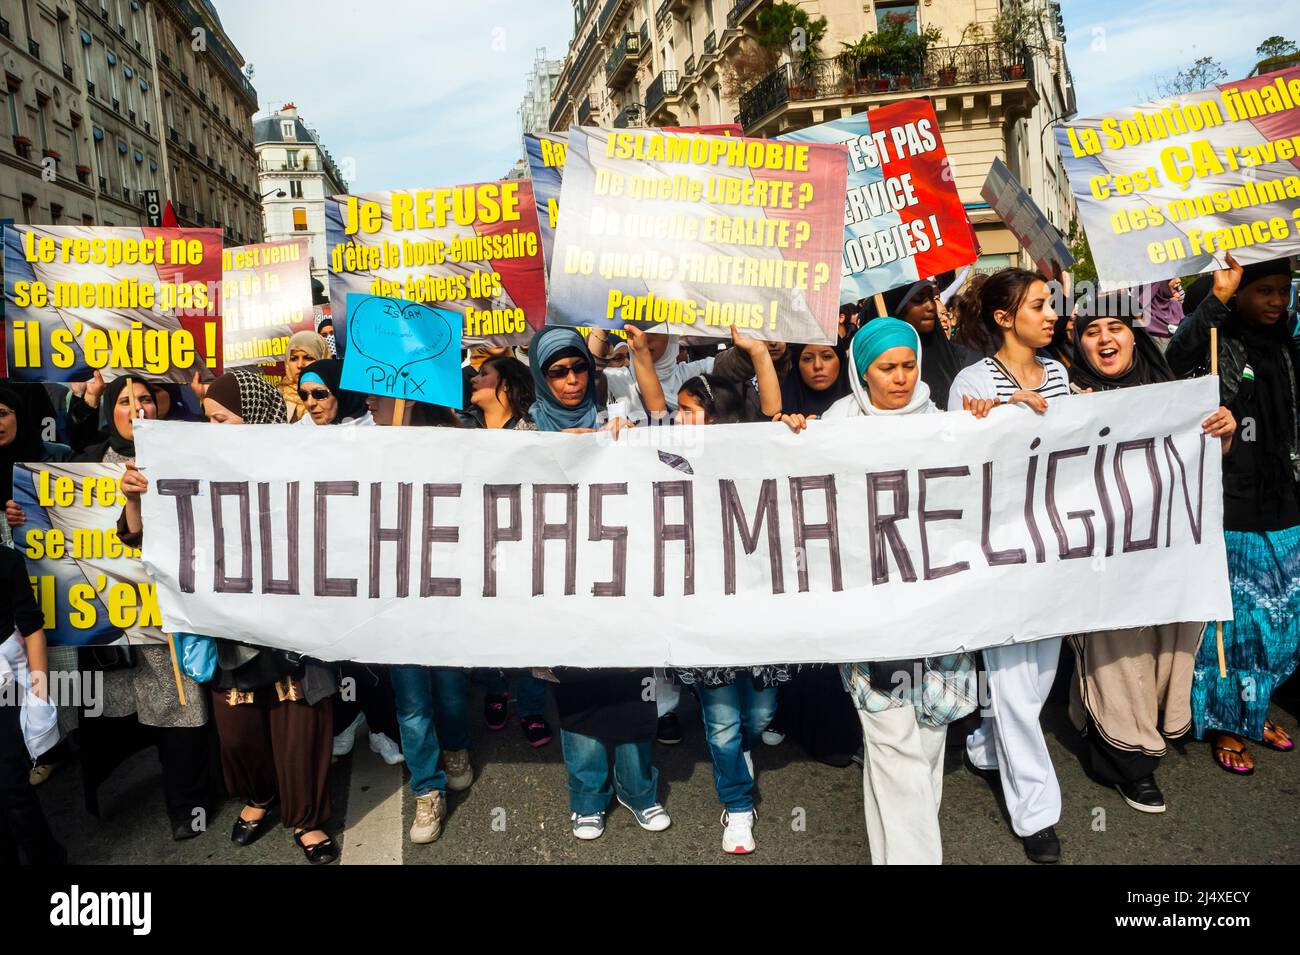 Paris, France, France musulmane, foule des femmes, dans le hijab, Protester contre l'islamophobie, 2011 Banque D'Images